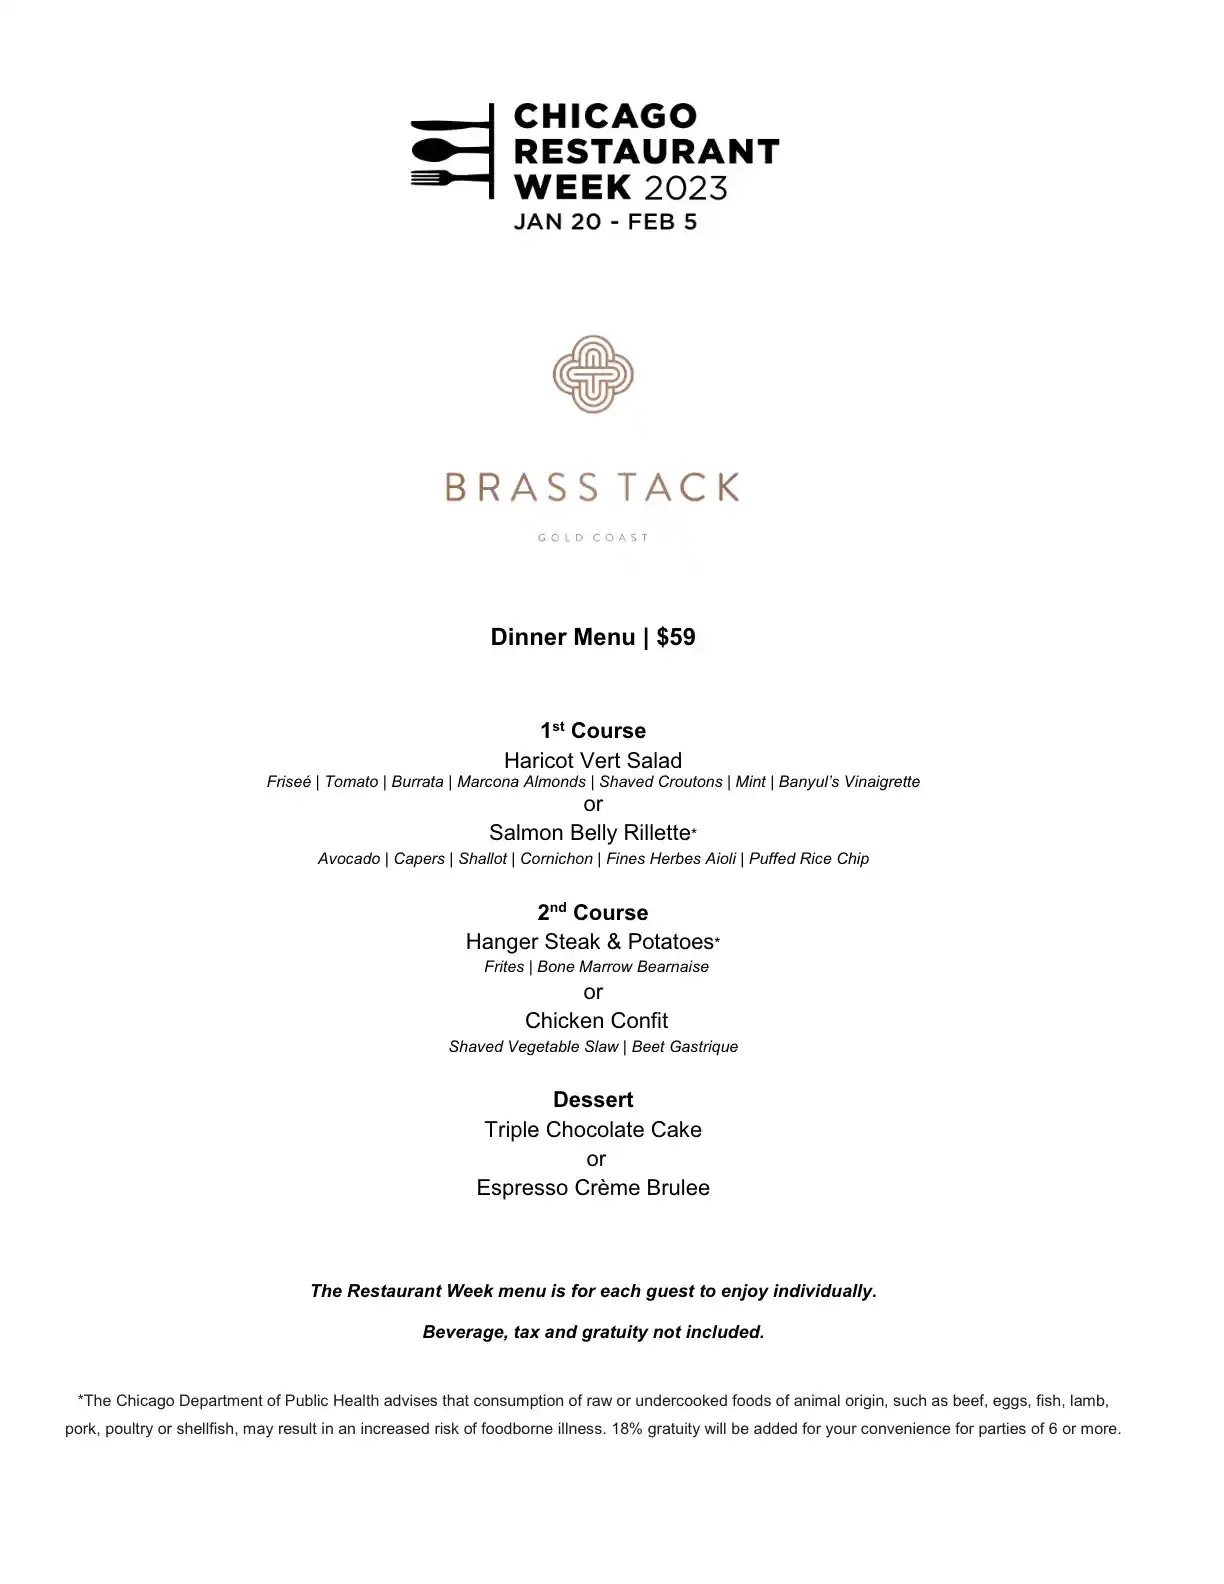 Chicago Restaurant Week 2023 Menu Brass Tack Dinner